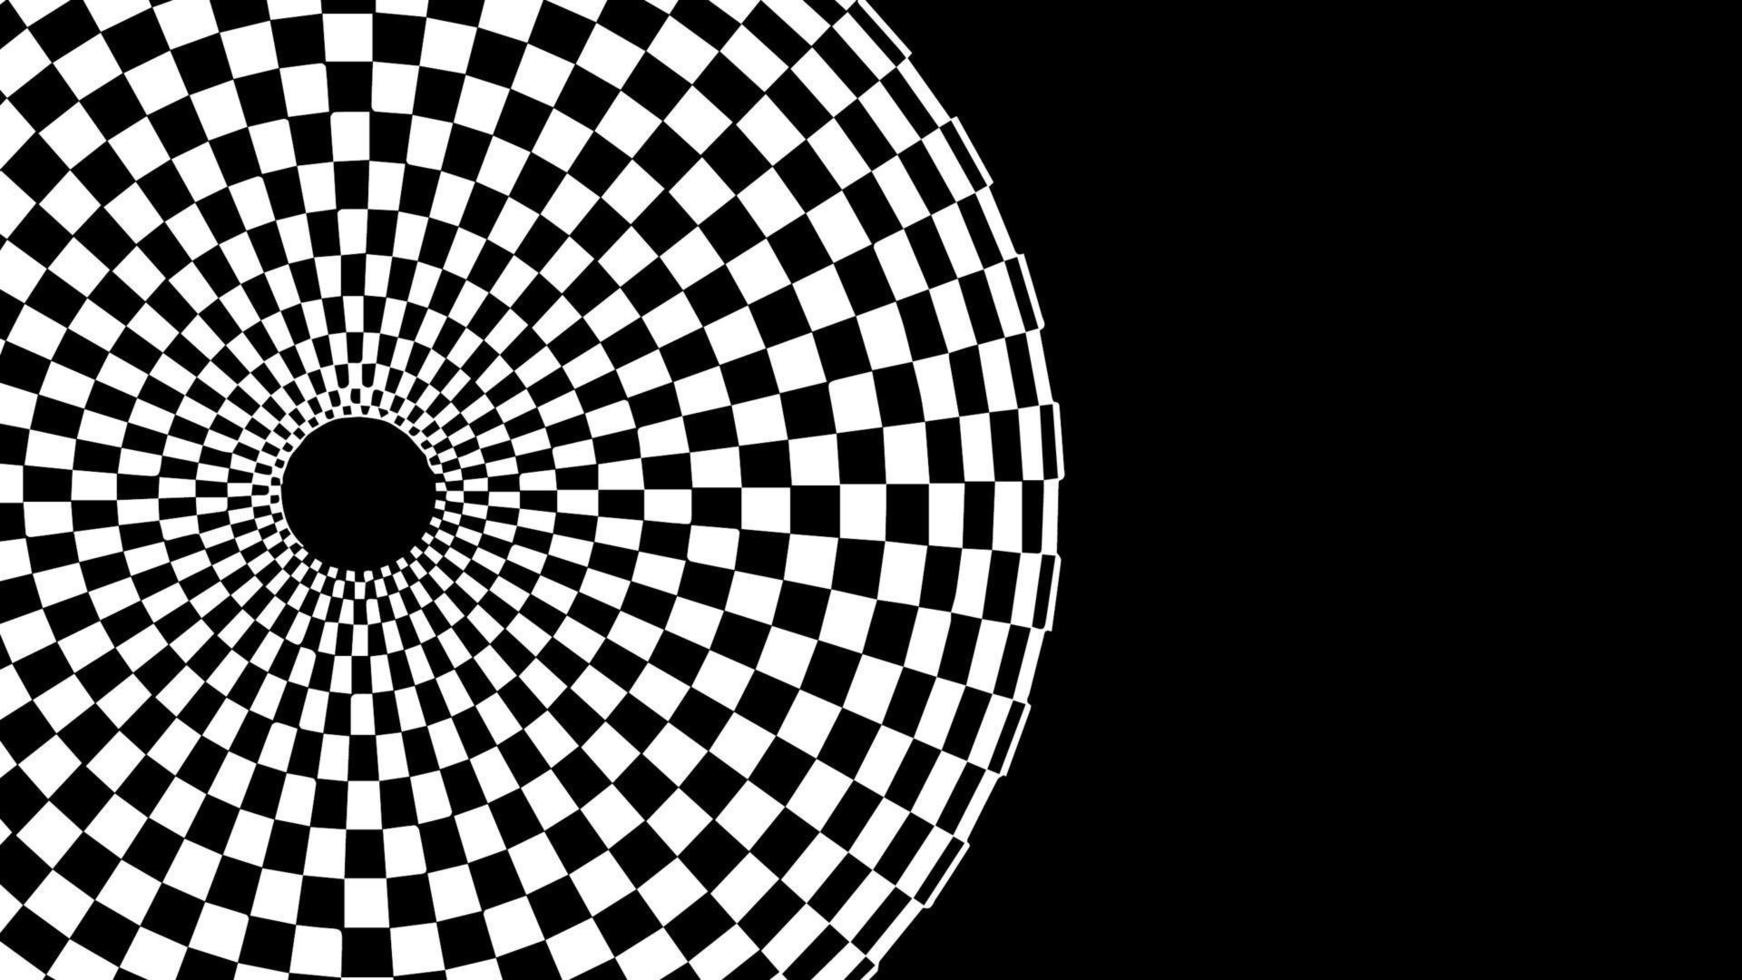 ottico illusione scacchi imbuto. eps 10 vettore illustrazione.